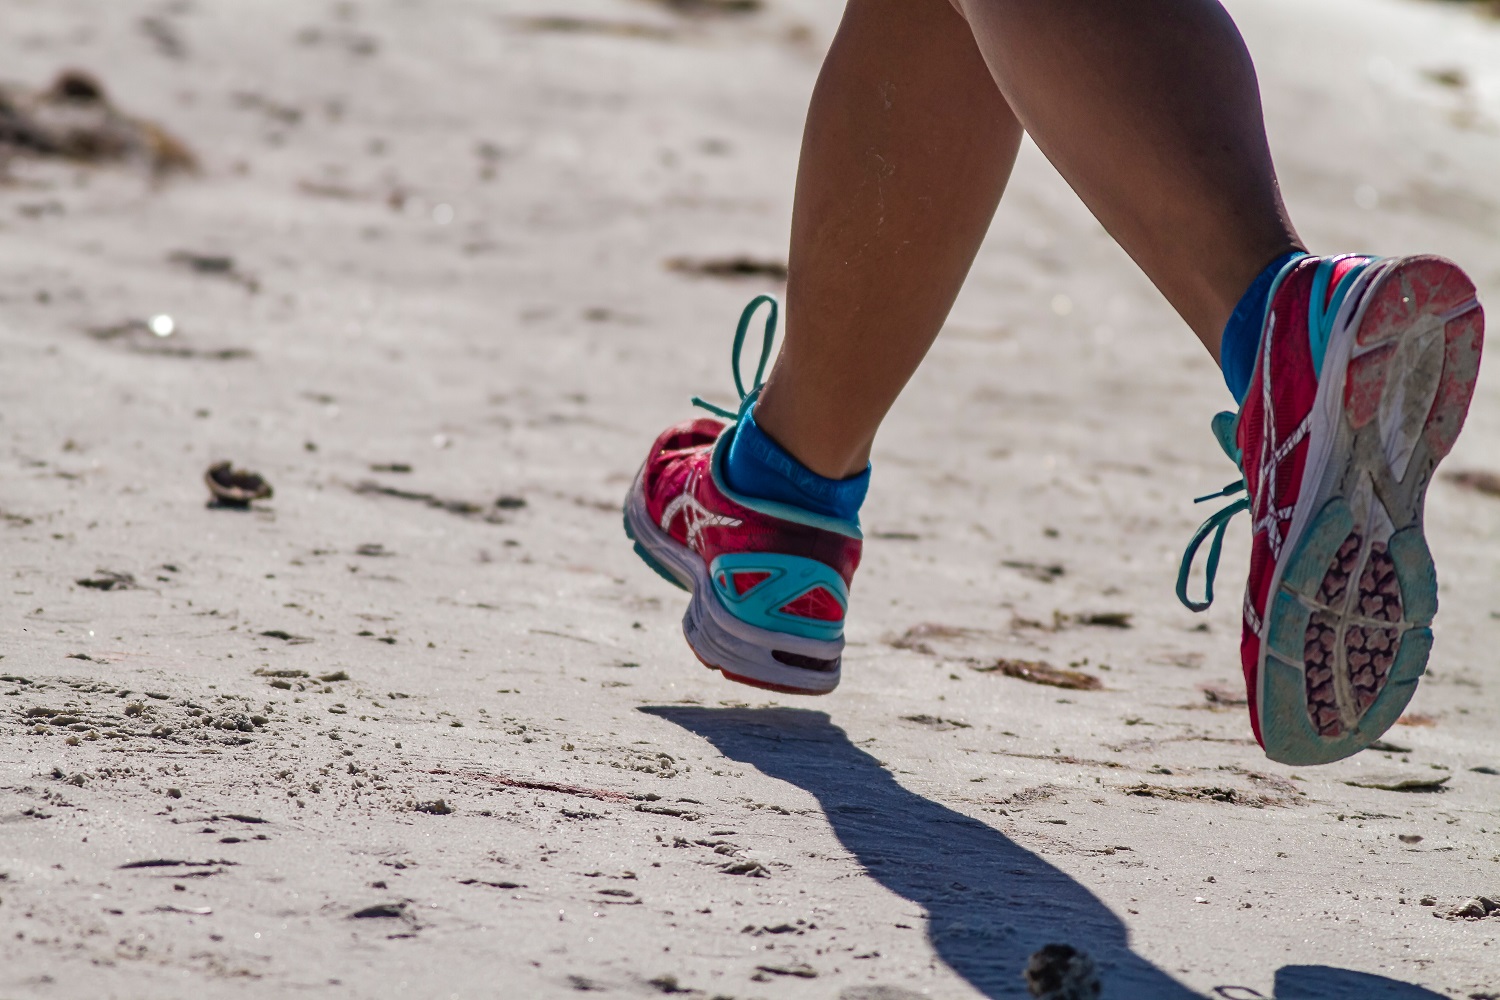 Buty do biegania - jakie wybrać i na co zwrócić uwagę?